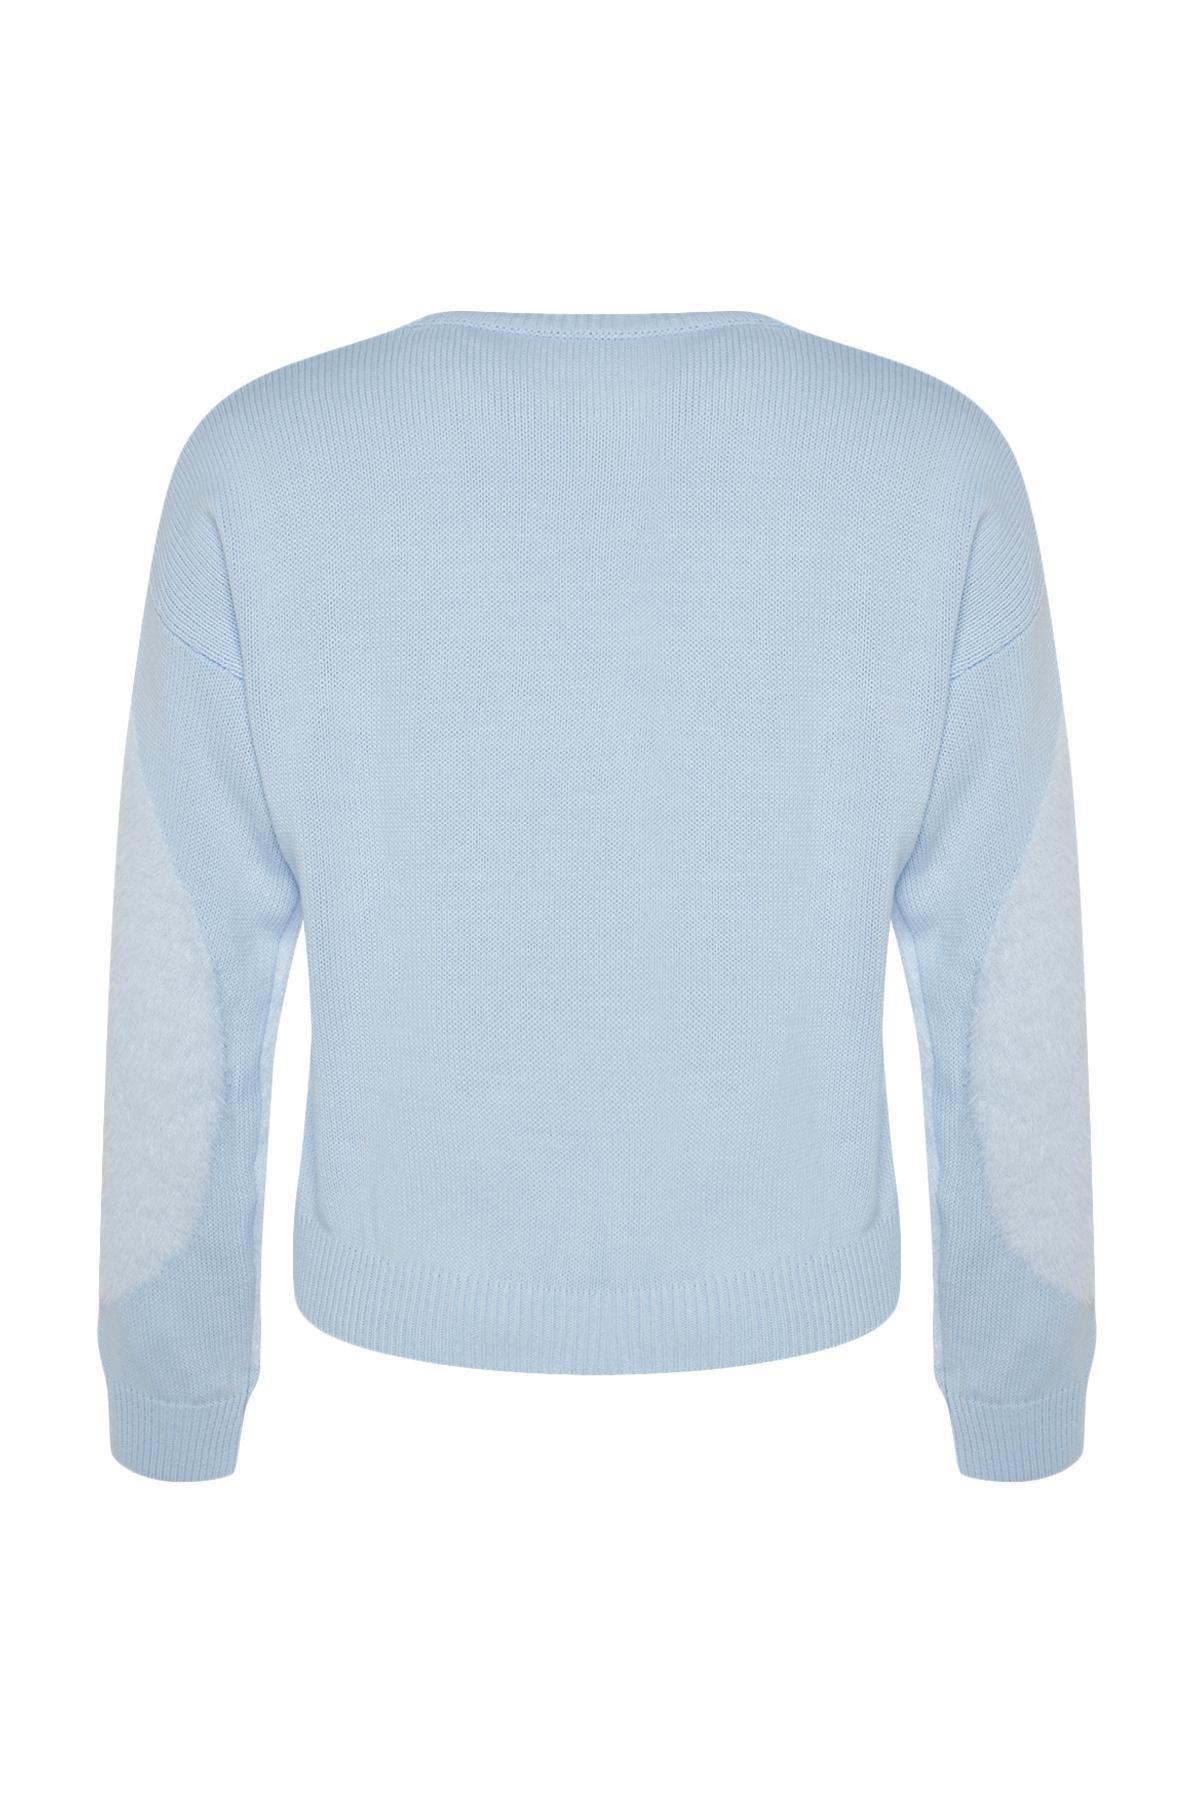 Trendyol - Blue Feather Knitwear Sweater